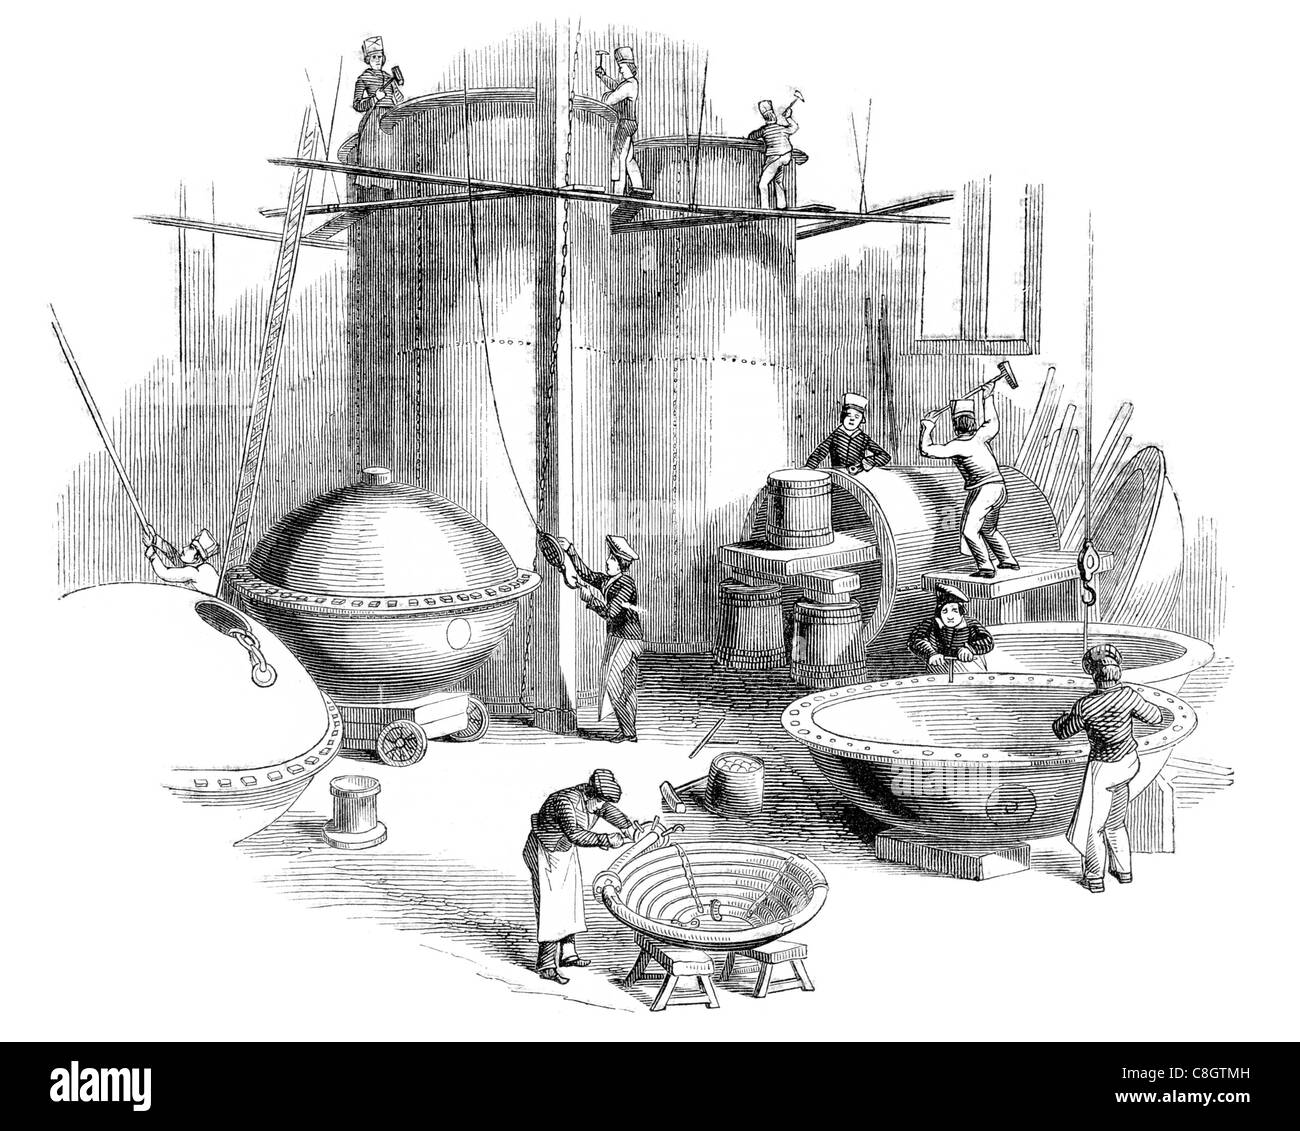 La fabbricazione di vasi di rame Cu gru di officina serbatoio caldaia nave artigiano Foto Stock